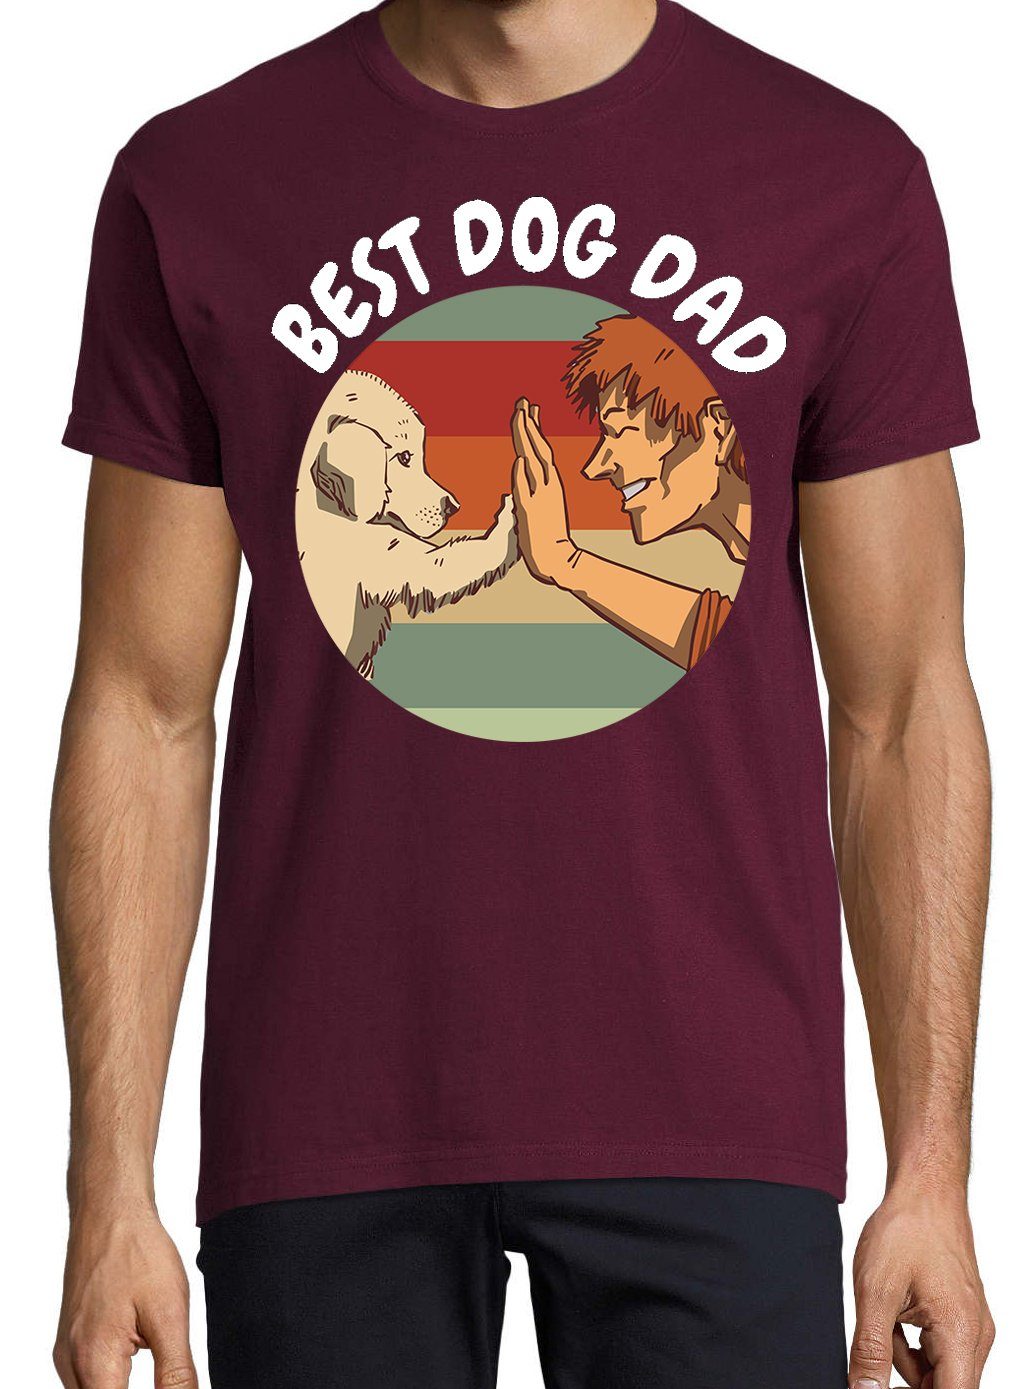 Frontprint Dog lustigem Shirt Herren Hunde Designz Burgund Dad Youth T-Shirt Best mit